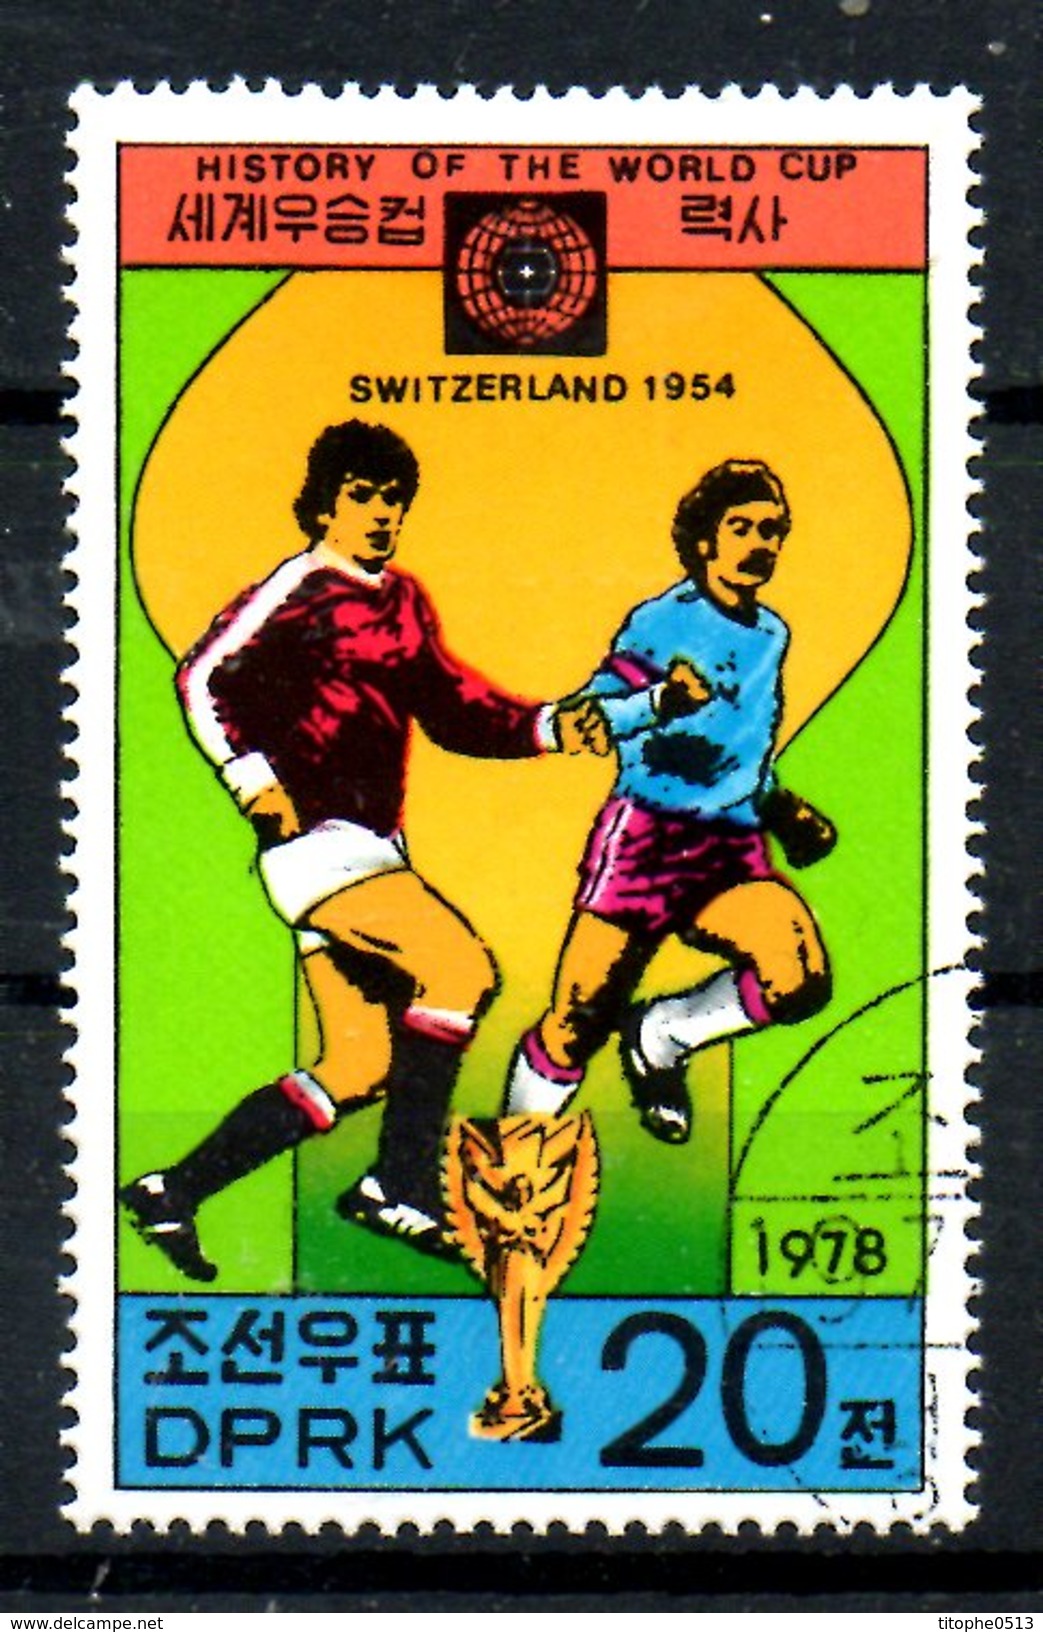 COREE DU NORD. N°1489E Oblitéré De 1978. Suisse'54. - 1954 – Switzerland